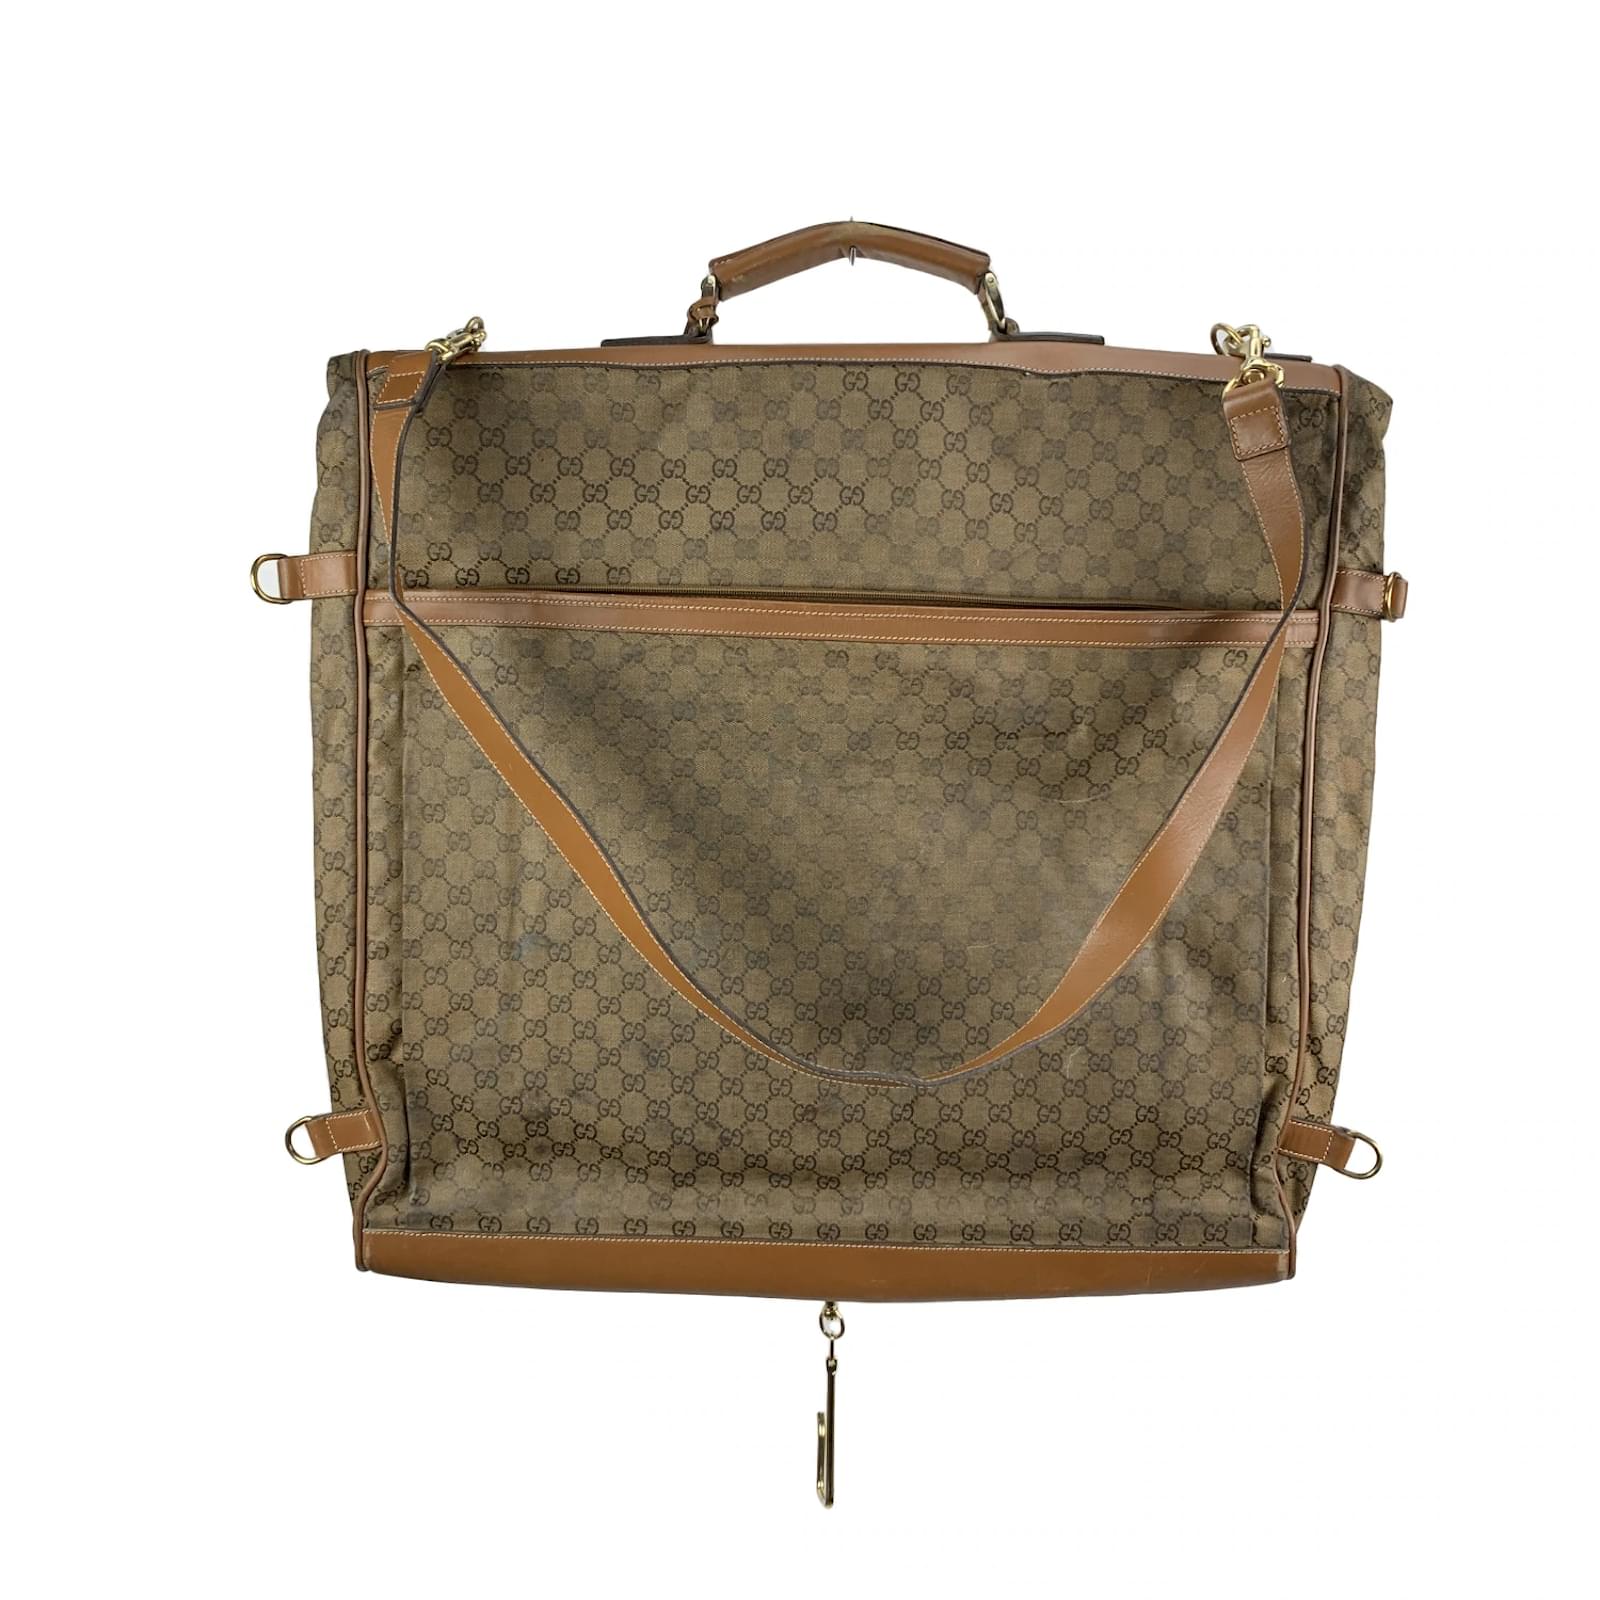 Louis Vuitton Monogram Canvas Garment Carrier Travel Bag